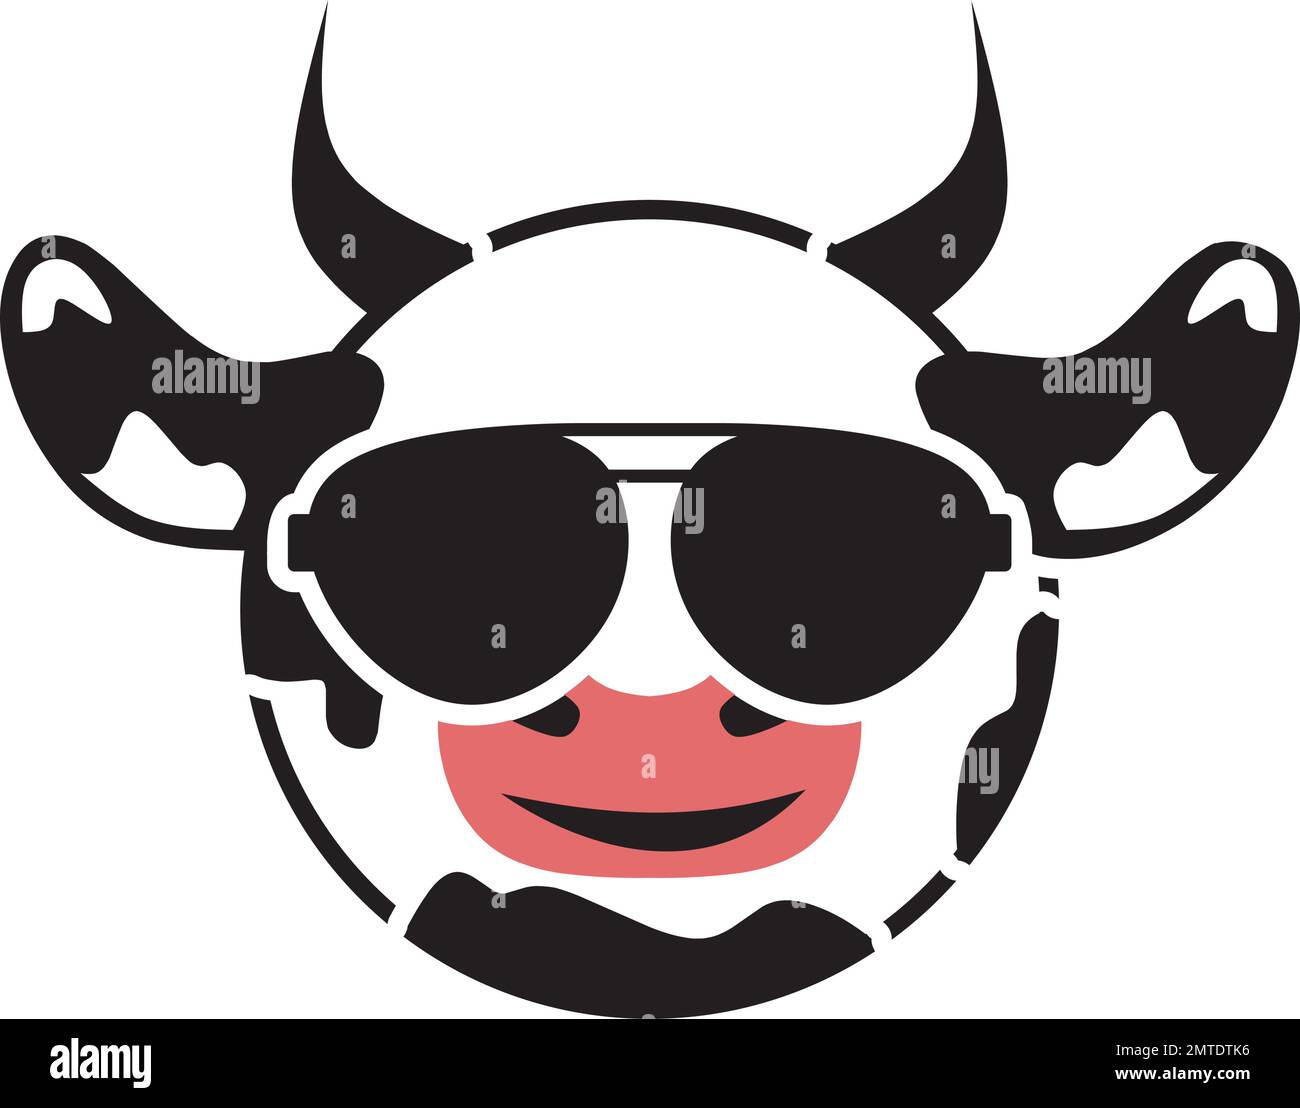 cute cow logo vector illustration template design Stock Vector